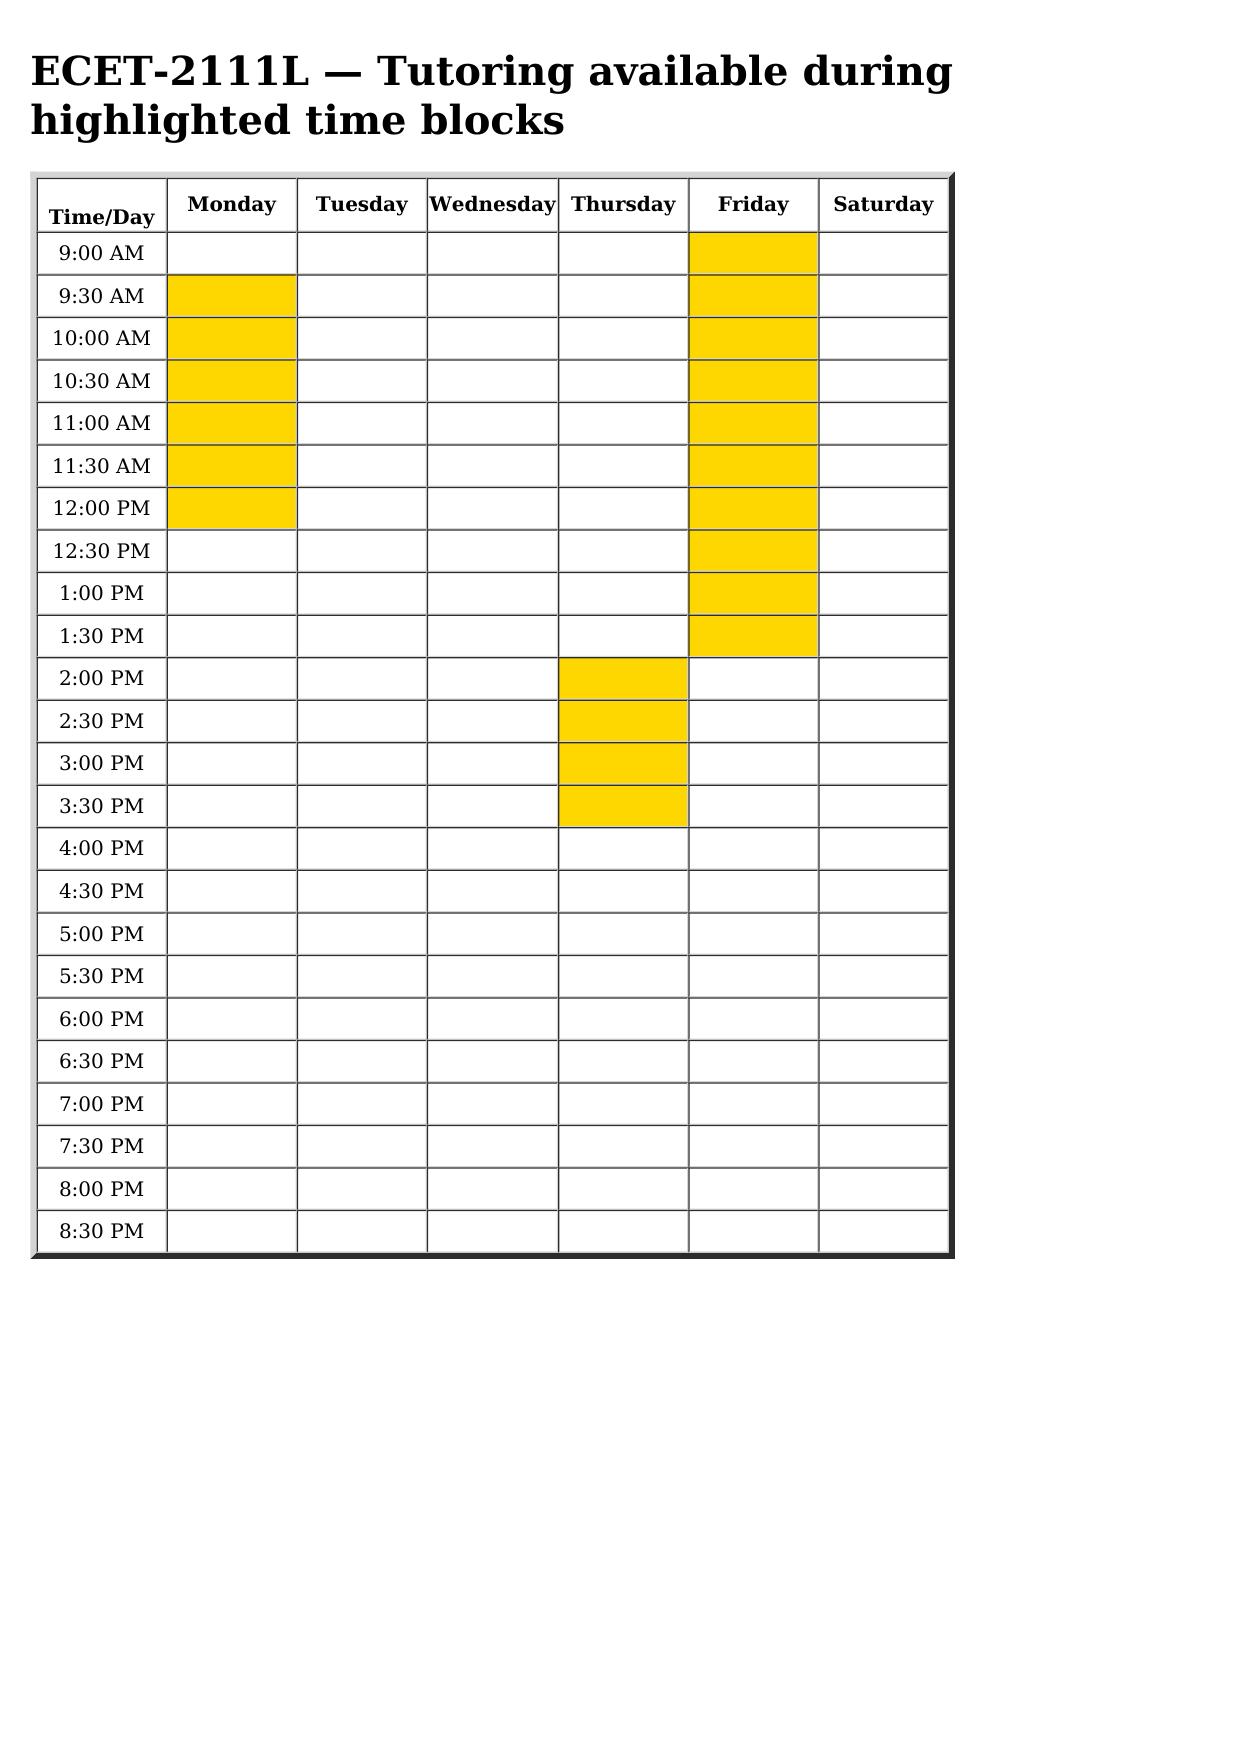 ecet 2111L schedule